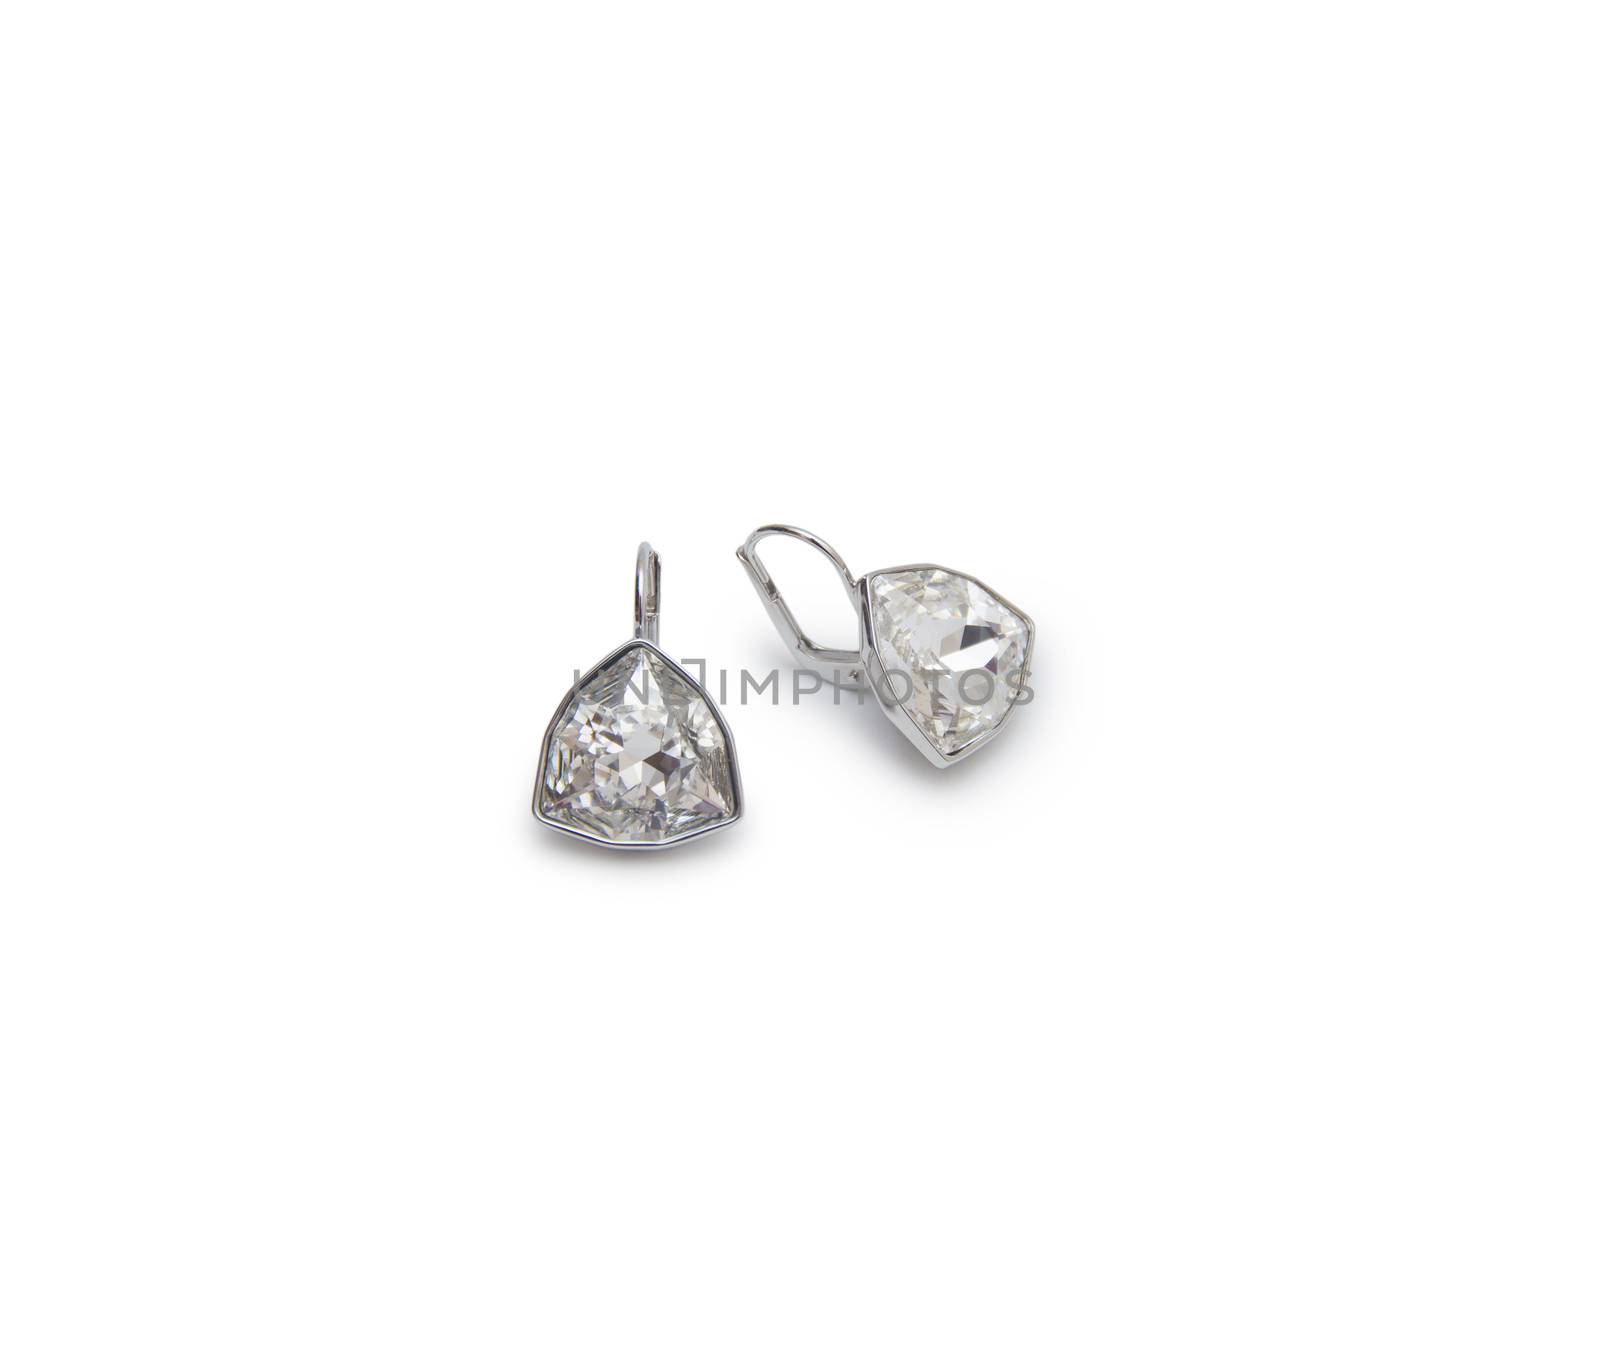 A couple of diamond earrings